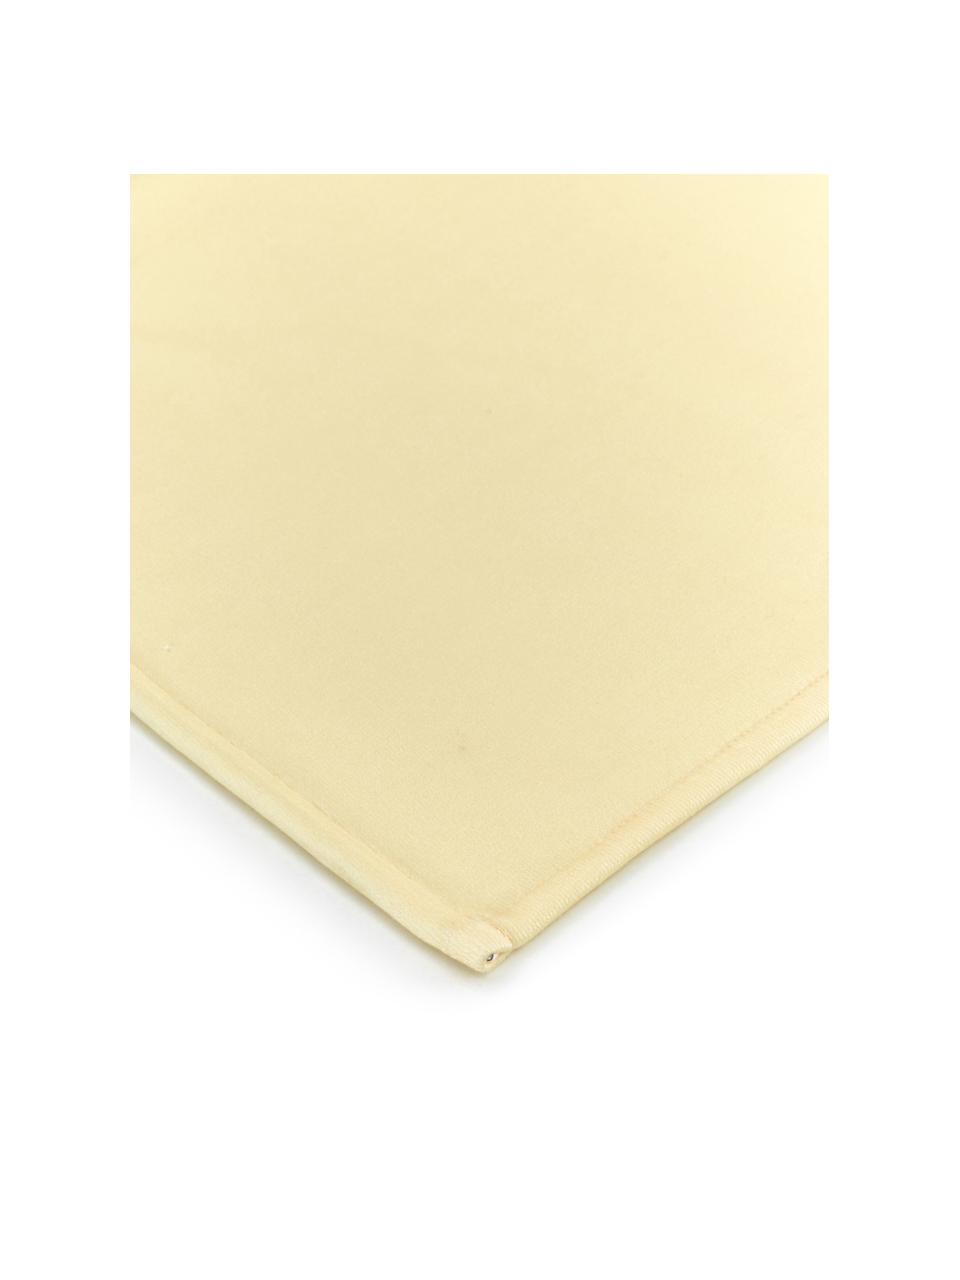 Tenká vzorovaná plážová osuška s nápisem Sunshine, 55 % polyester, 45 % bavlna
Velmi nízká gramáž, 340 g/m², Žlutá, více barev, Š 70 cm, D 150 cm